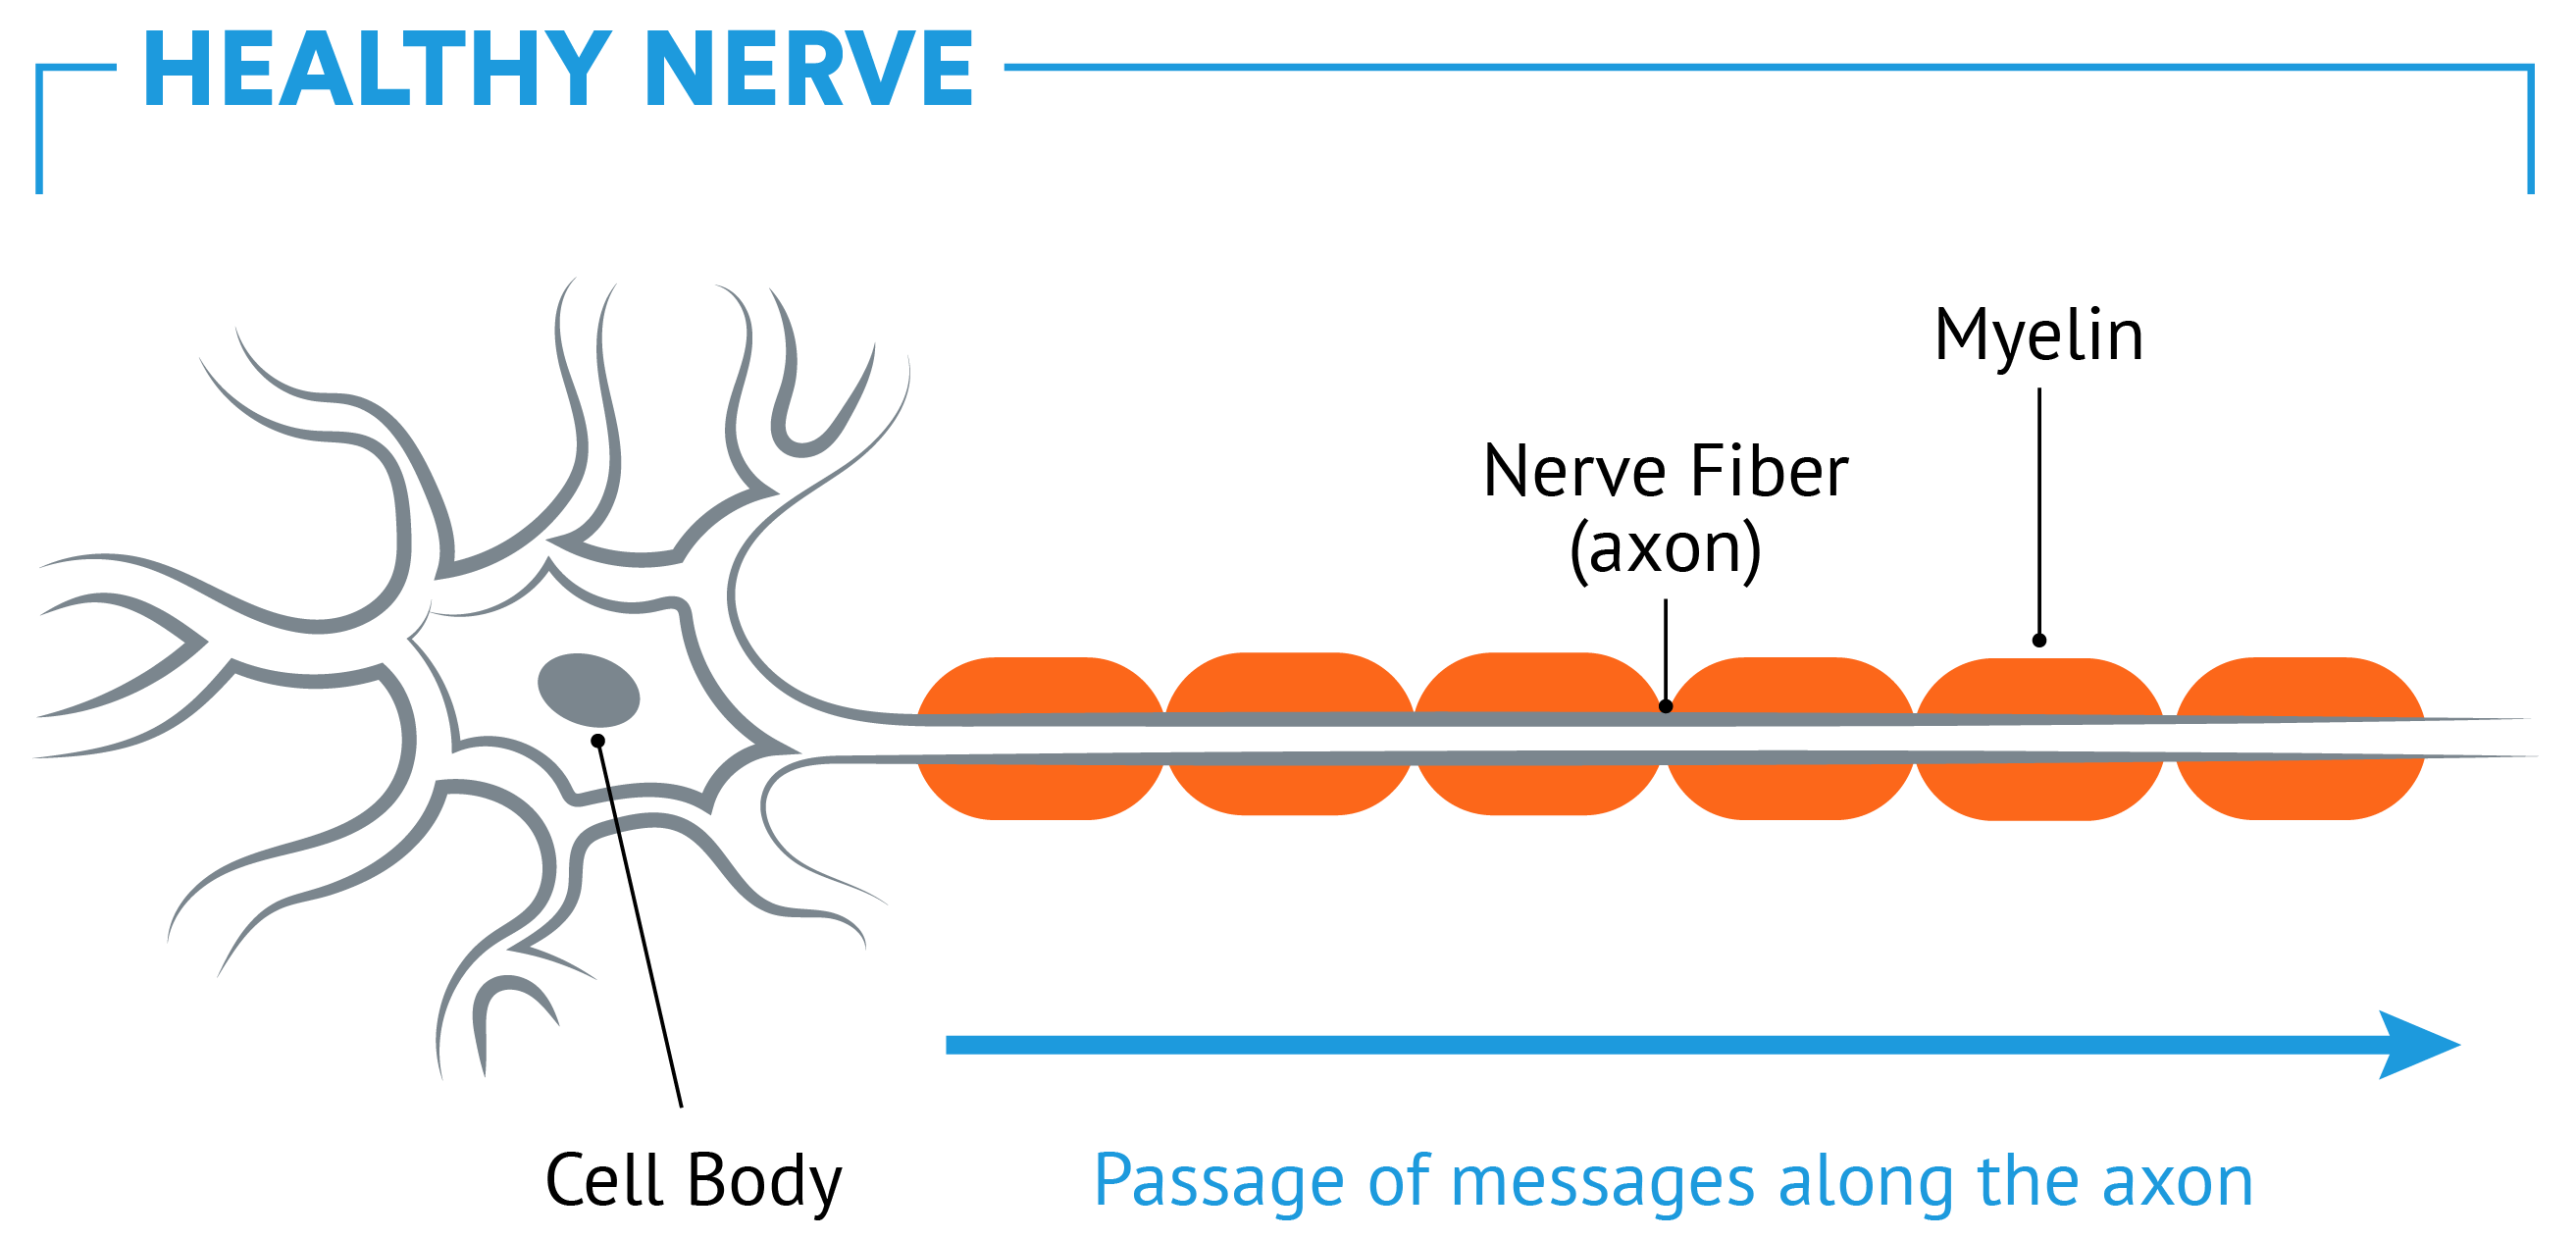 Healthy nerve vs. damaged nerve in CNS